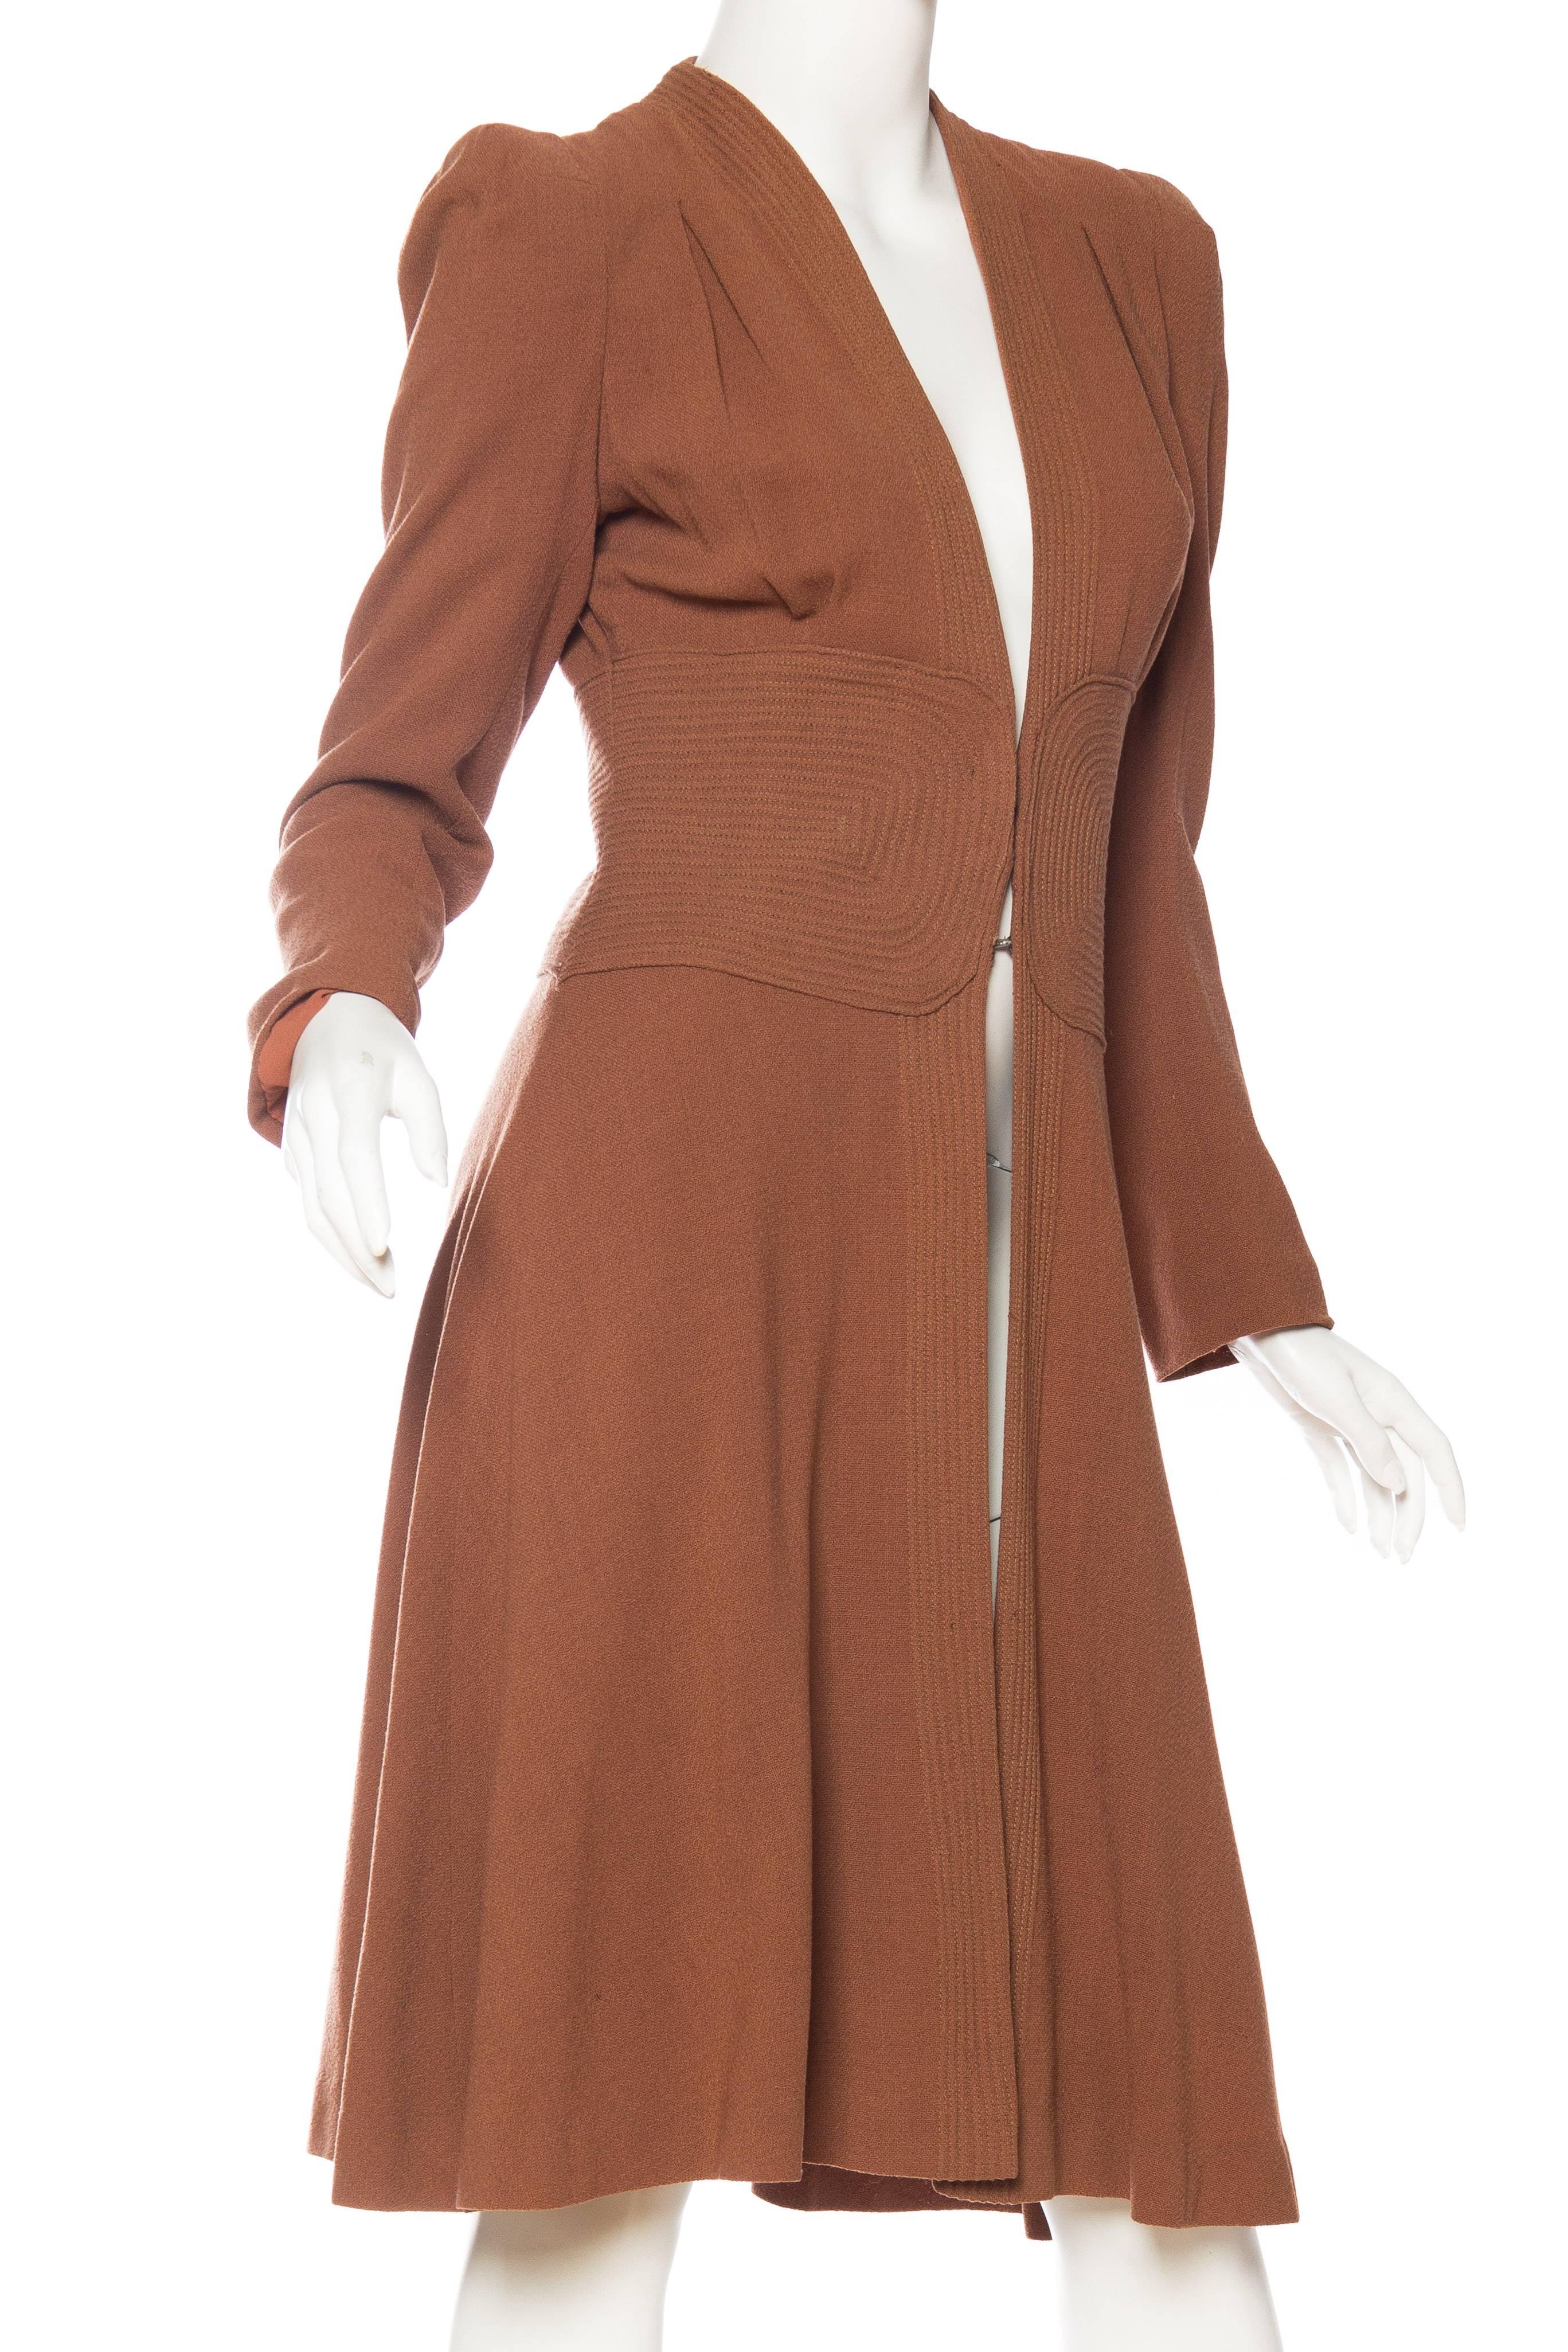 Women's 1930s Biba Style Wool Coat 